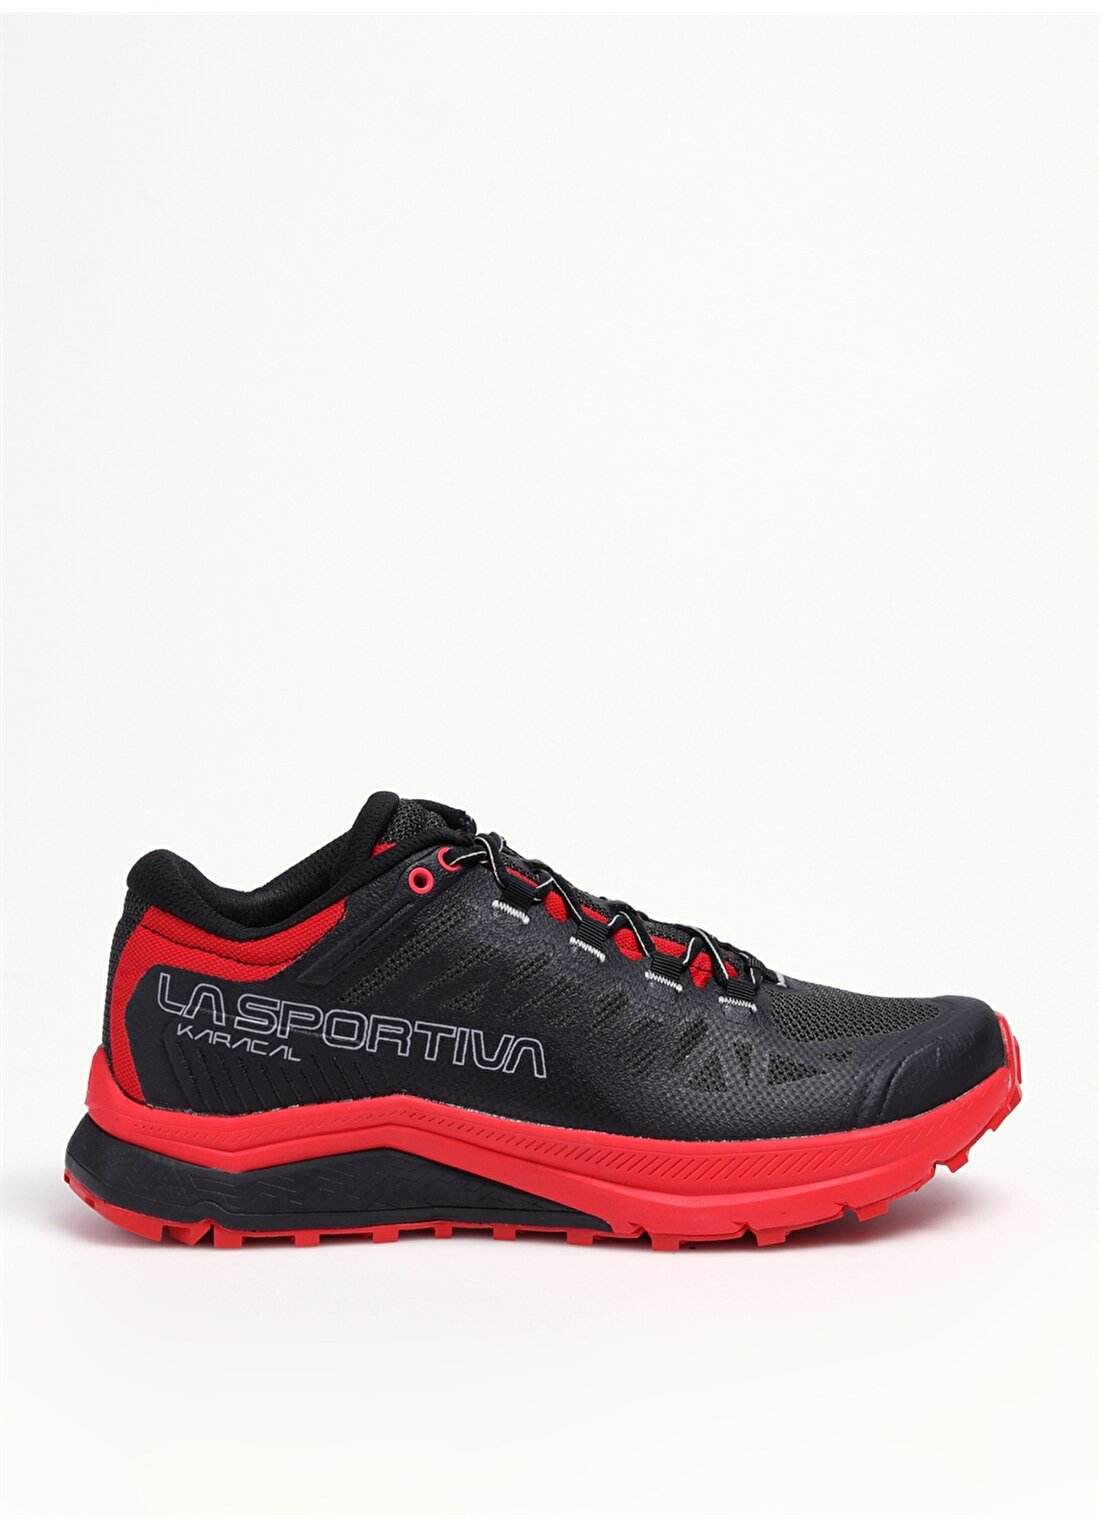 La Sportiva Siyah - Kırmızı Erkek Outdoor Ayakkabısı A46U999314 KARACAL